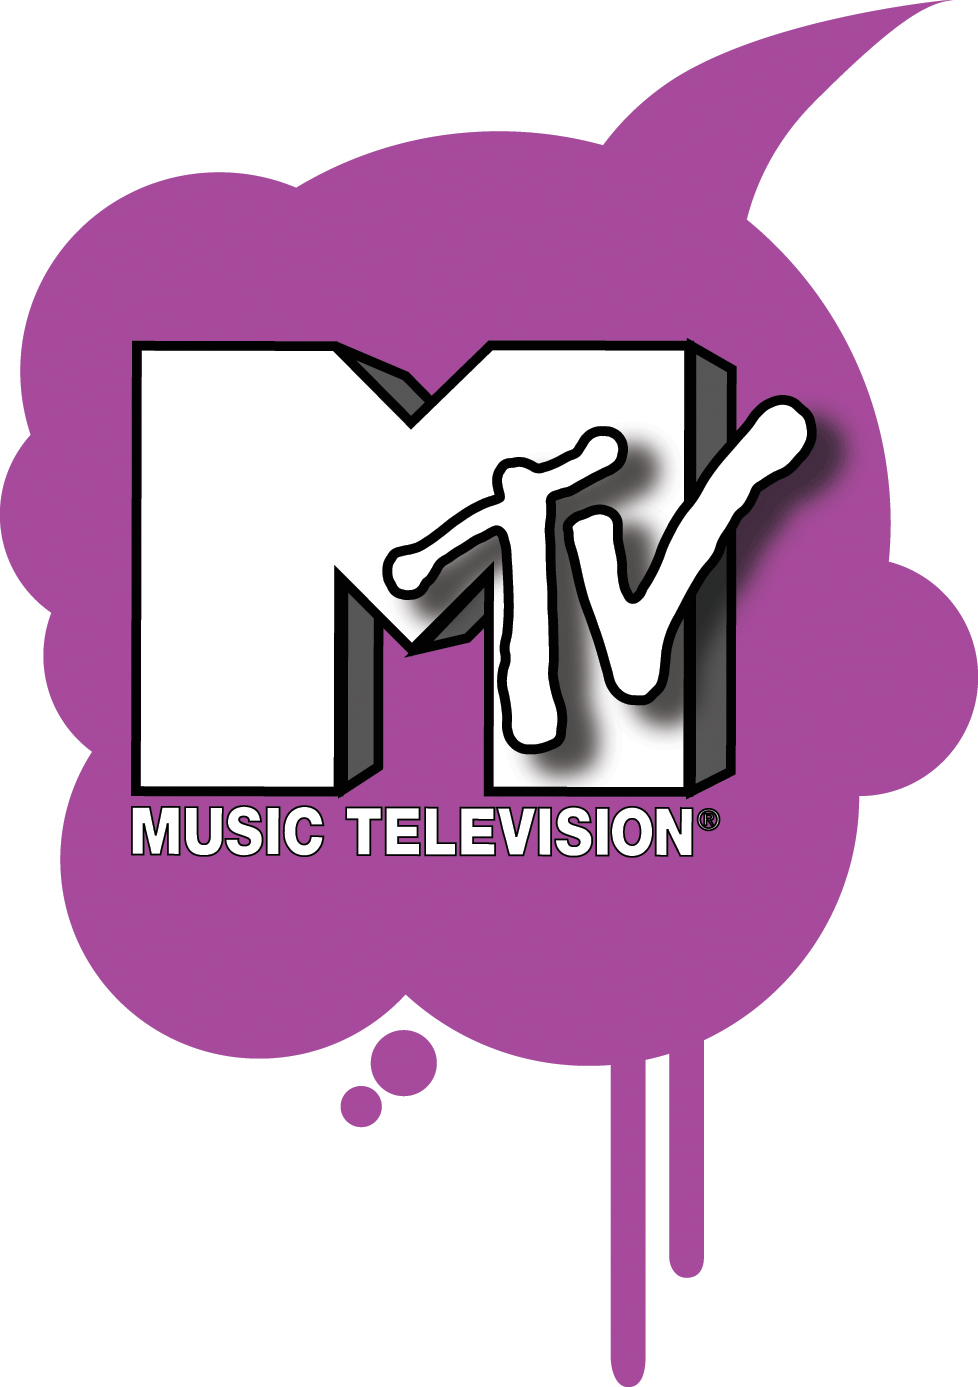 テレビ局 Logomark Mania 世界のかわいいロゴマーク集 企業ロゴ ブランドロゴ